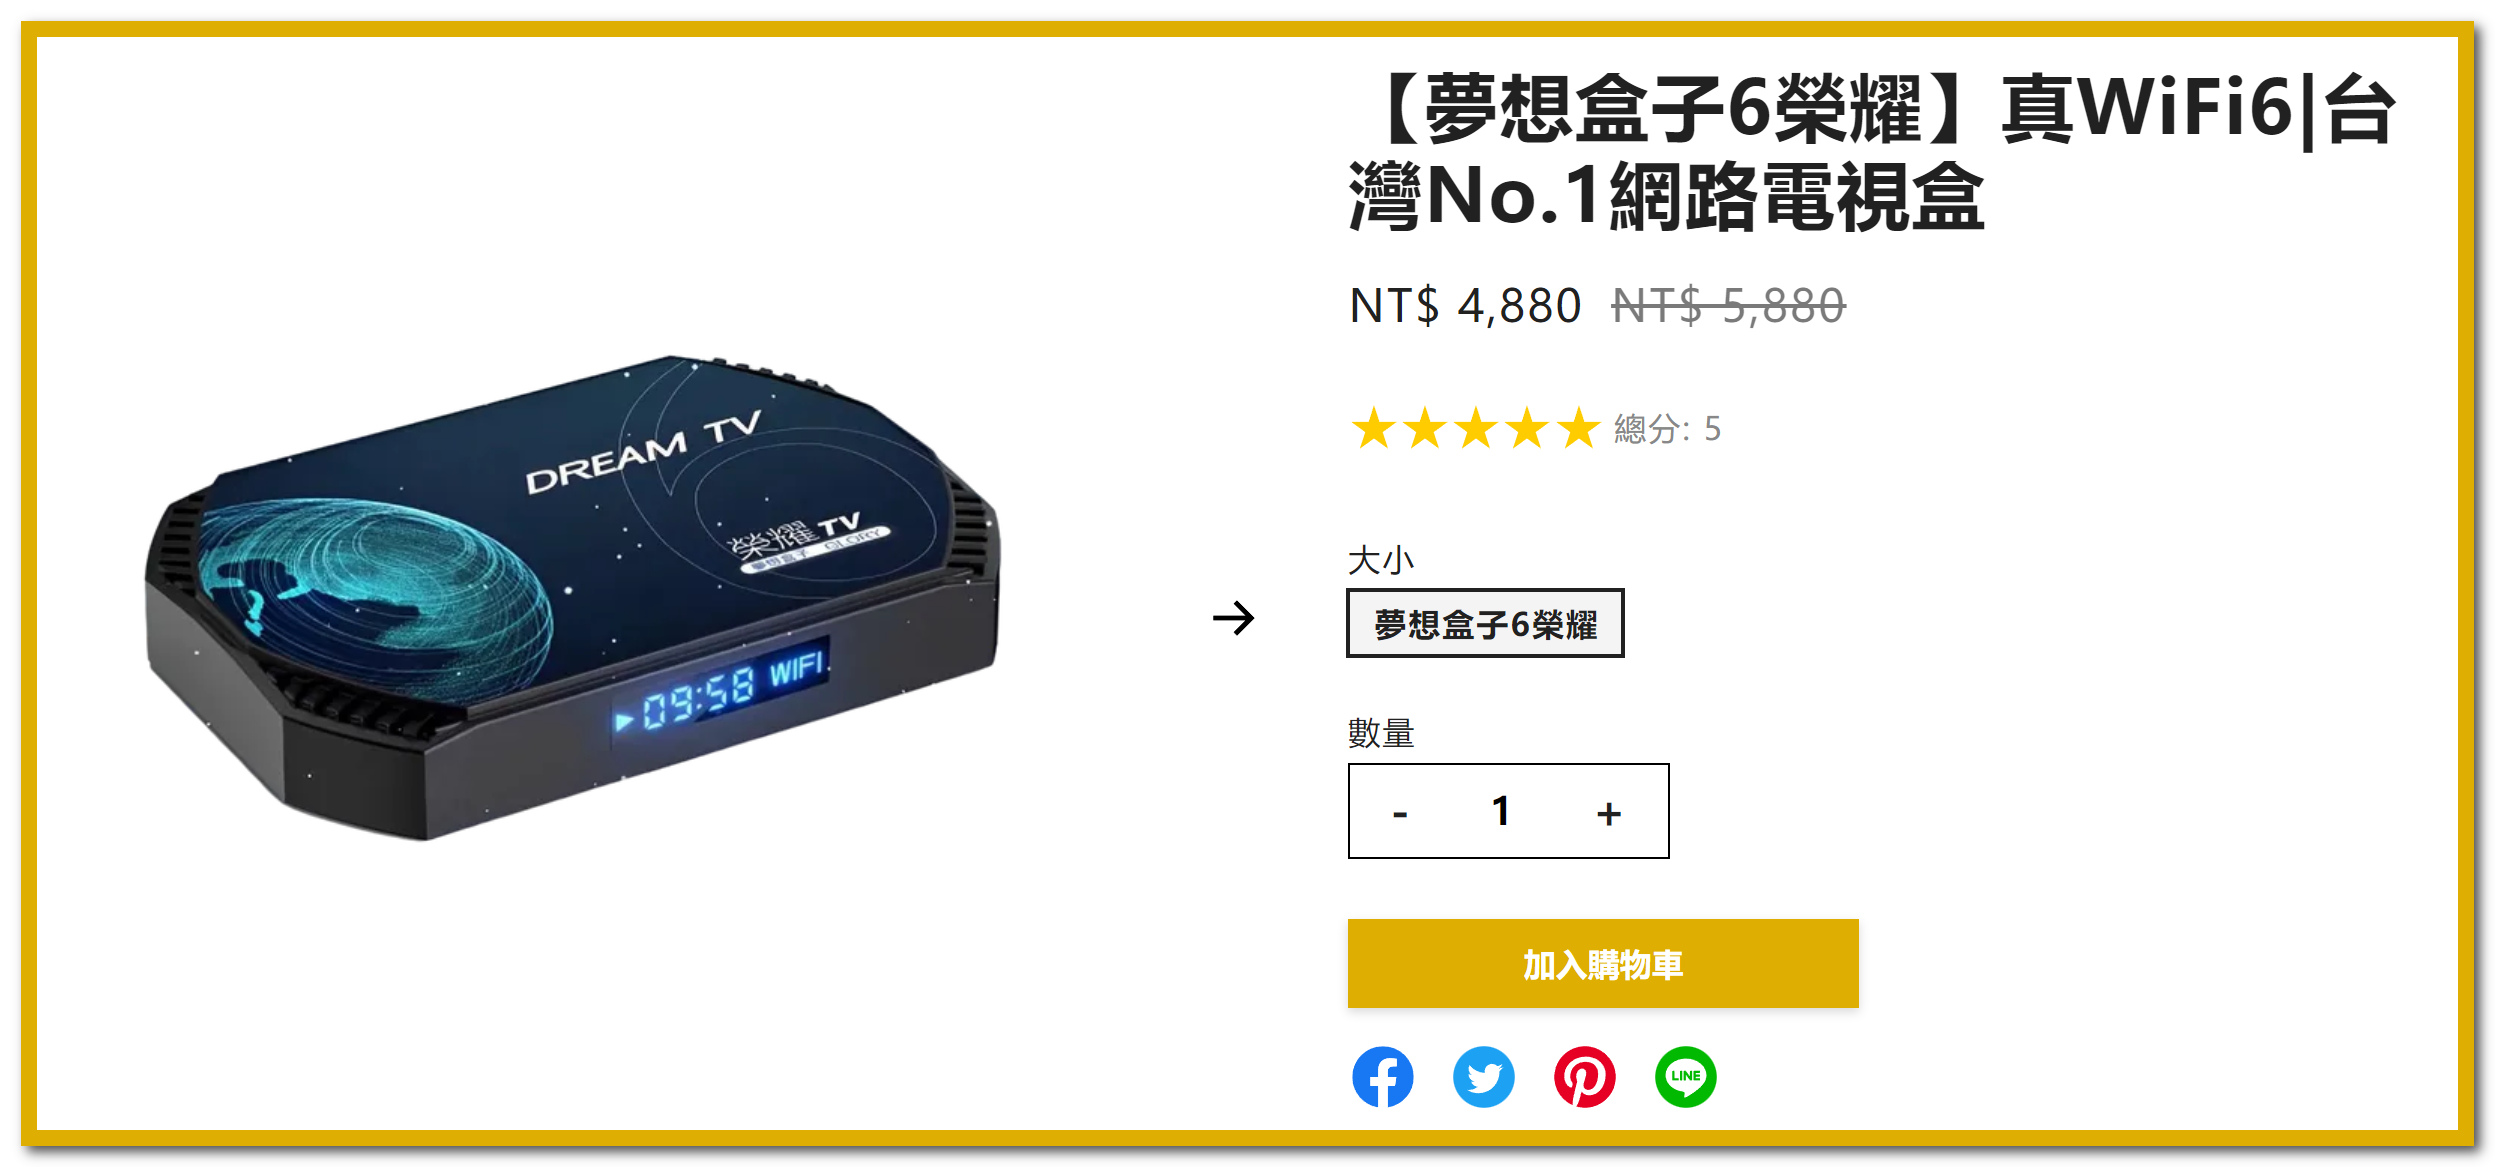 【夢想盒子6】榮耀評測，台灣首款WIFI6正版電視盒，8K播放，一次購買終身免費。(2024年) - 暴風直播, 網路電視盒規格效能差異, 夢想盒子經銷, 2.4G語音遙控器, OTT正版授權, 頂尖規格的Amlogic s905x4處理器, Amlogic s905x4處理器, Dream TV Overlord, 獨家三語音系統, DREAM TV預購活動, 送HDMI2.0, Remove term: 支援1000M網路速度, 小米電視盒 支援1000M網路速度, 夏傑語音, 環球TV, 環球影城, Disney+, 暴風影院, 編輯推薦, 夢想盒子6語音系統, 夢想盒子6榮耀預購, 夢想盒子6聲控機皇, 夢想盒子6免費第四台, 夢想盒子6支援8K, 夢想盒子6Dream OS 6.0, 夢想盒子6DDR4 4G+128G, 夢想盒子6硬體部分, 夢想盒子6榮耀國際版, 夢想盒子第六代, 夢想盒子6榮耀預購活動, 榮耀重置設定, 夢想盒子6榮耀, 電視盒ptt, 小米盒子, NETFLIX, 敗家達人, 夢想盒子, Dream TV, 安博, 安博盒子, 敗家輝哥, 富榮街36巷27號, 呈星有限公司, 電視盒推薦, 電視盒評價, 電視盒推薦2021, 電視盒是什麼, 電視盒推薦mobile01, 電視盒第四台, 網路電視盒, 八德富榮街36巷27號, 桃園網路電視盒, 桃園電視盒, 桃園網路盒, 富榮電視盒, 八德富榮電視盒專賣店, 八德富榮電視盒, 八德電視盒, 電視盒要怎麼買？, 電視盒比較, 小米電視盒, 小米 - 敗家達人推薦